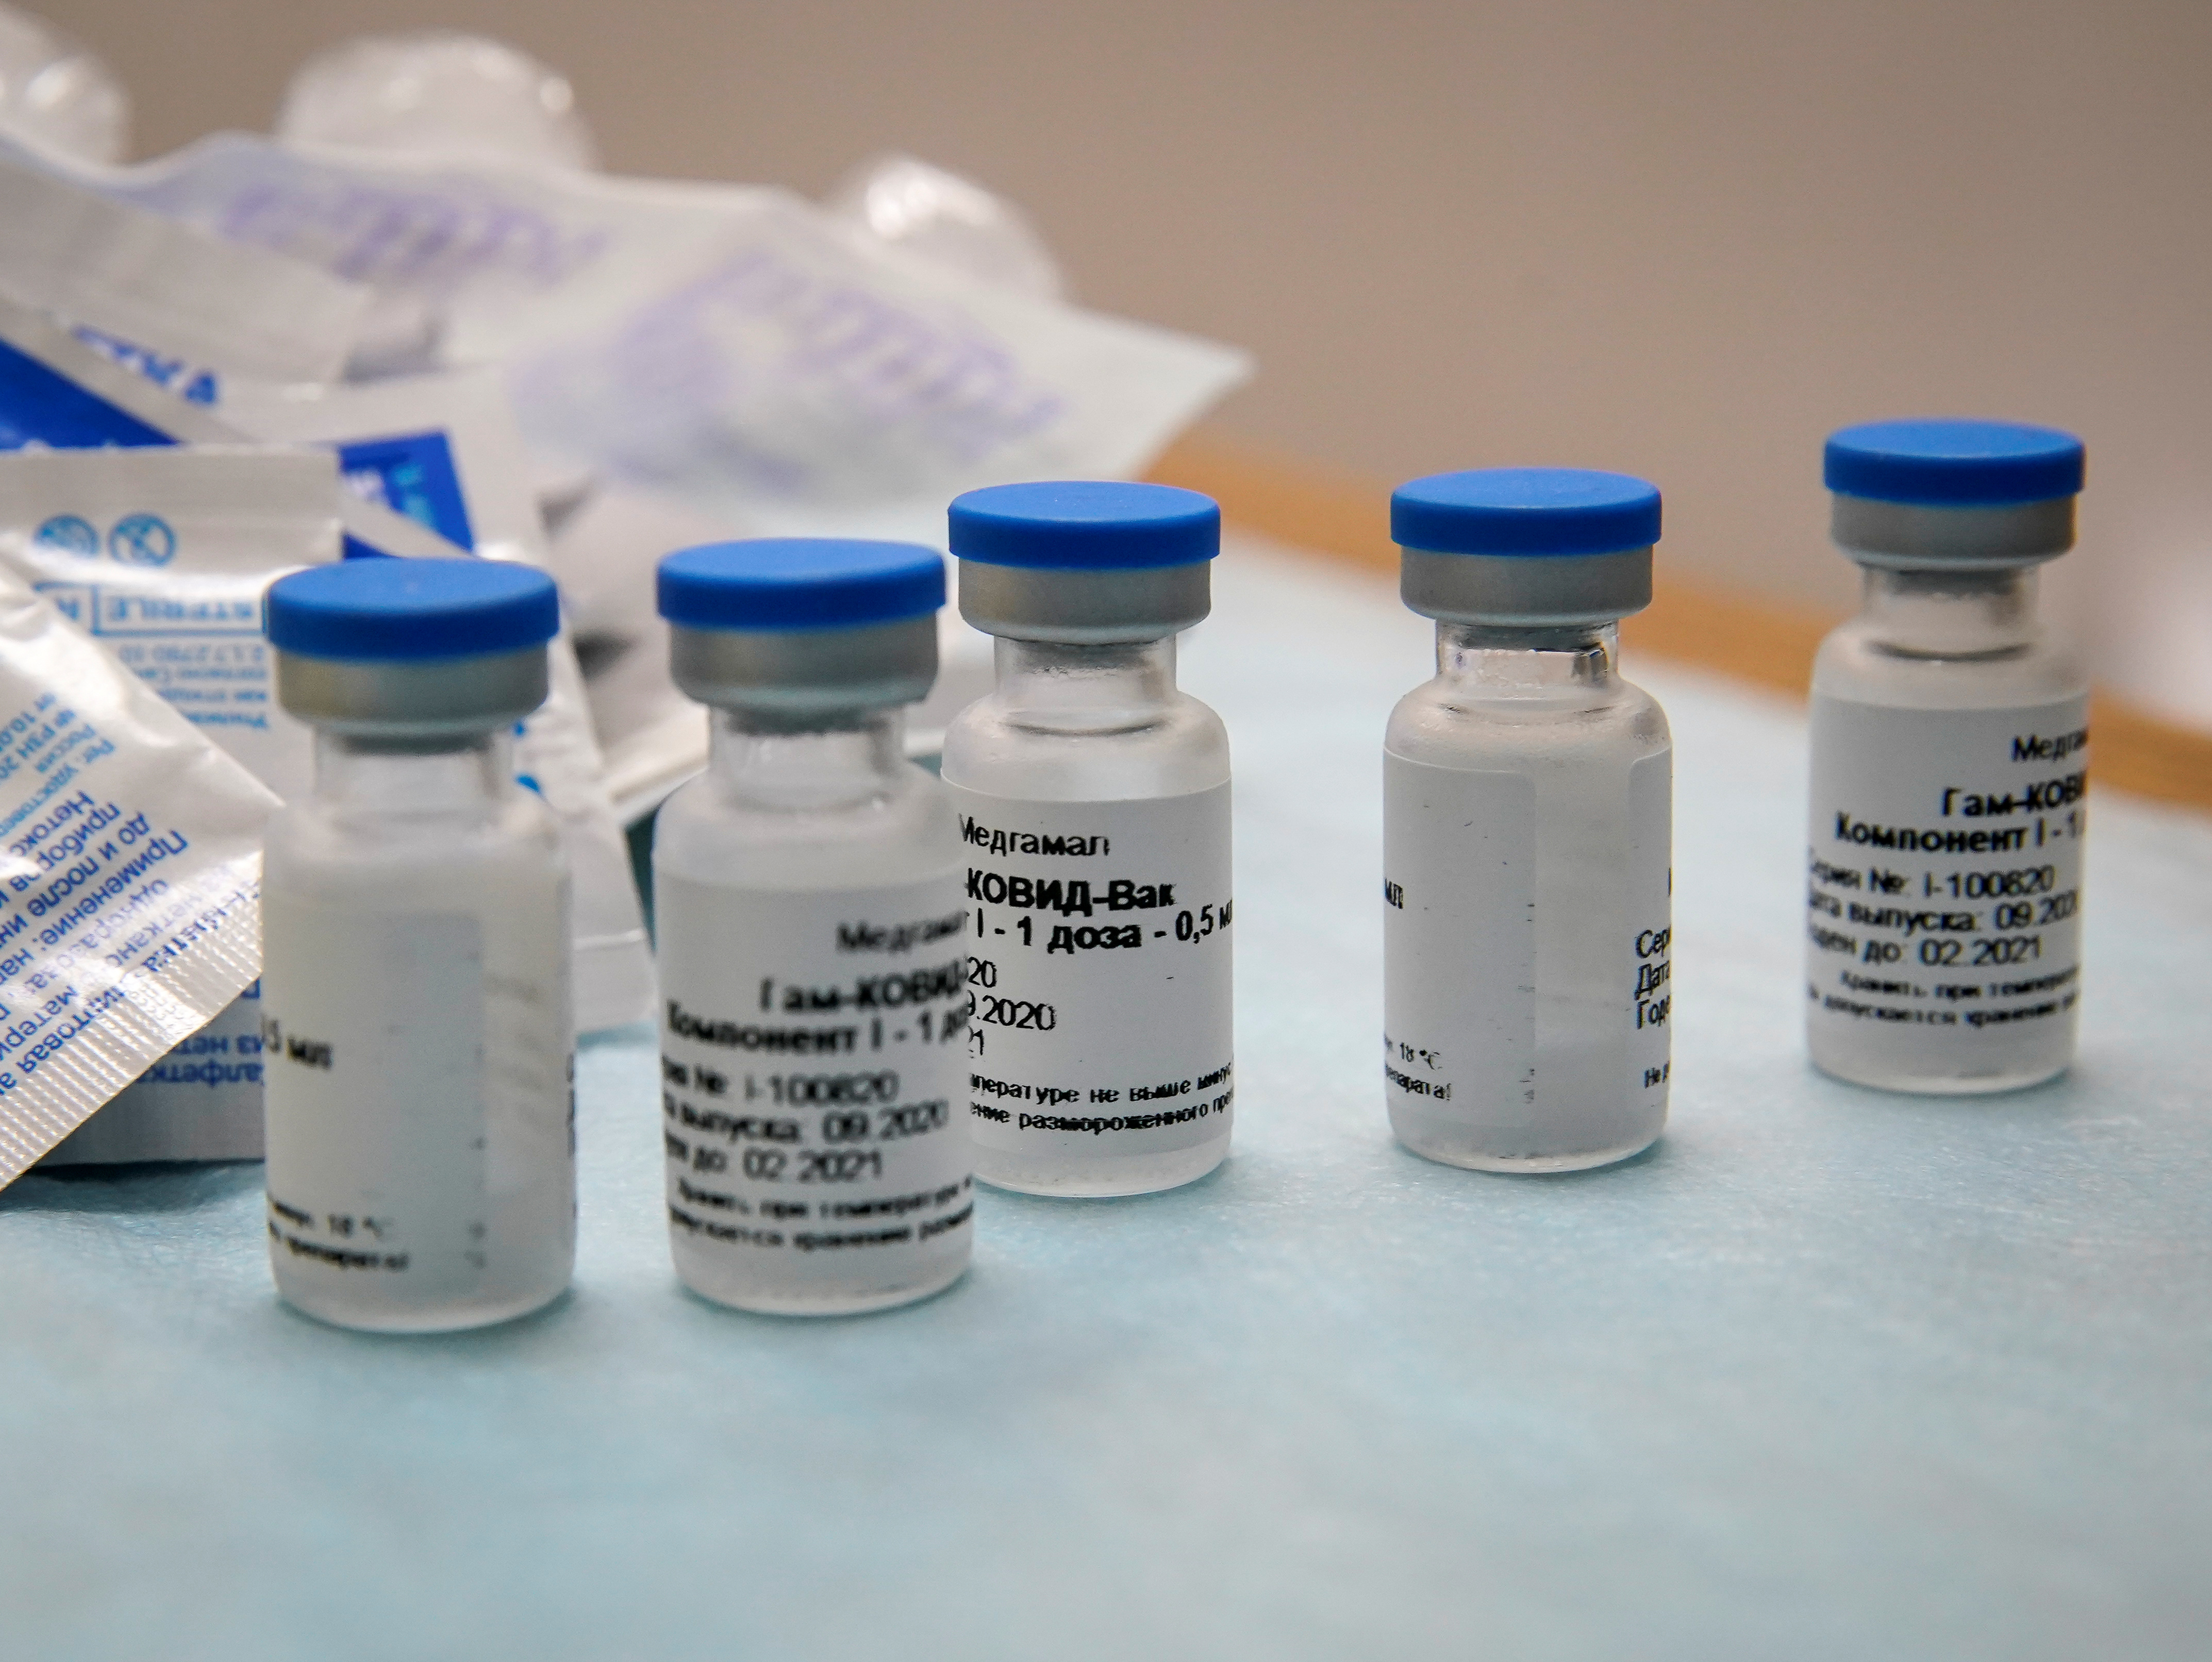 La plataforma de la vacuna se basa en una similar contra el ébola - REUTERS/Tatyana Makeyeva